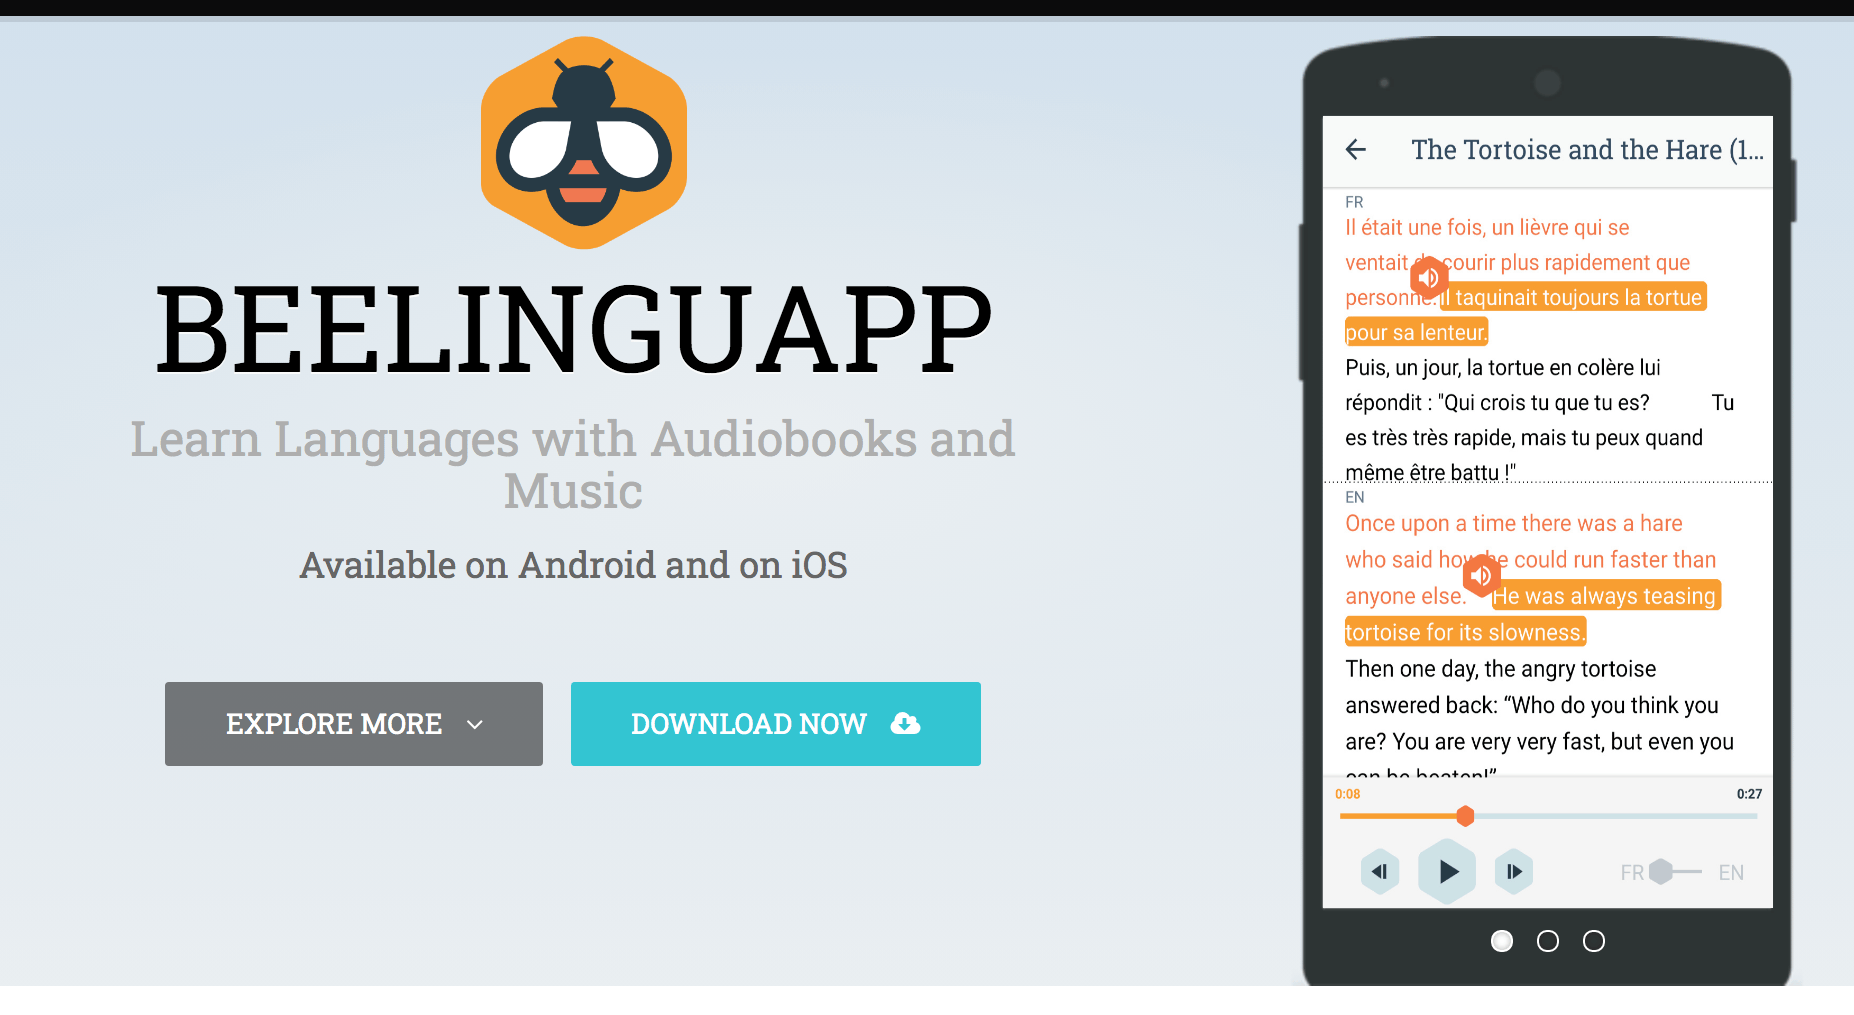 Beelinguapp - Study New Languages with this App